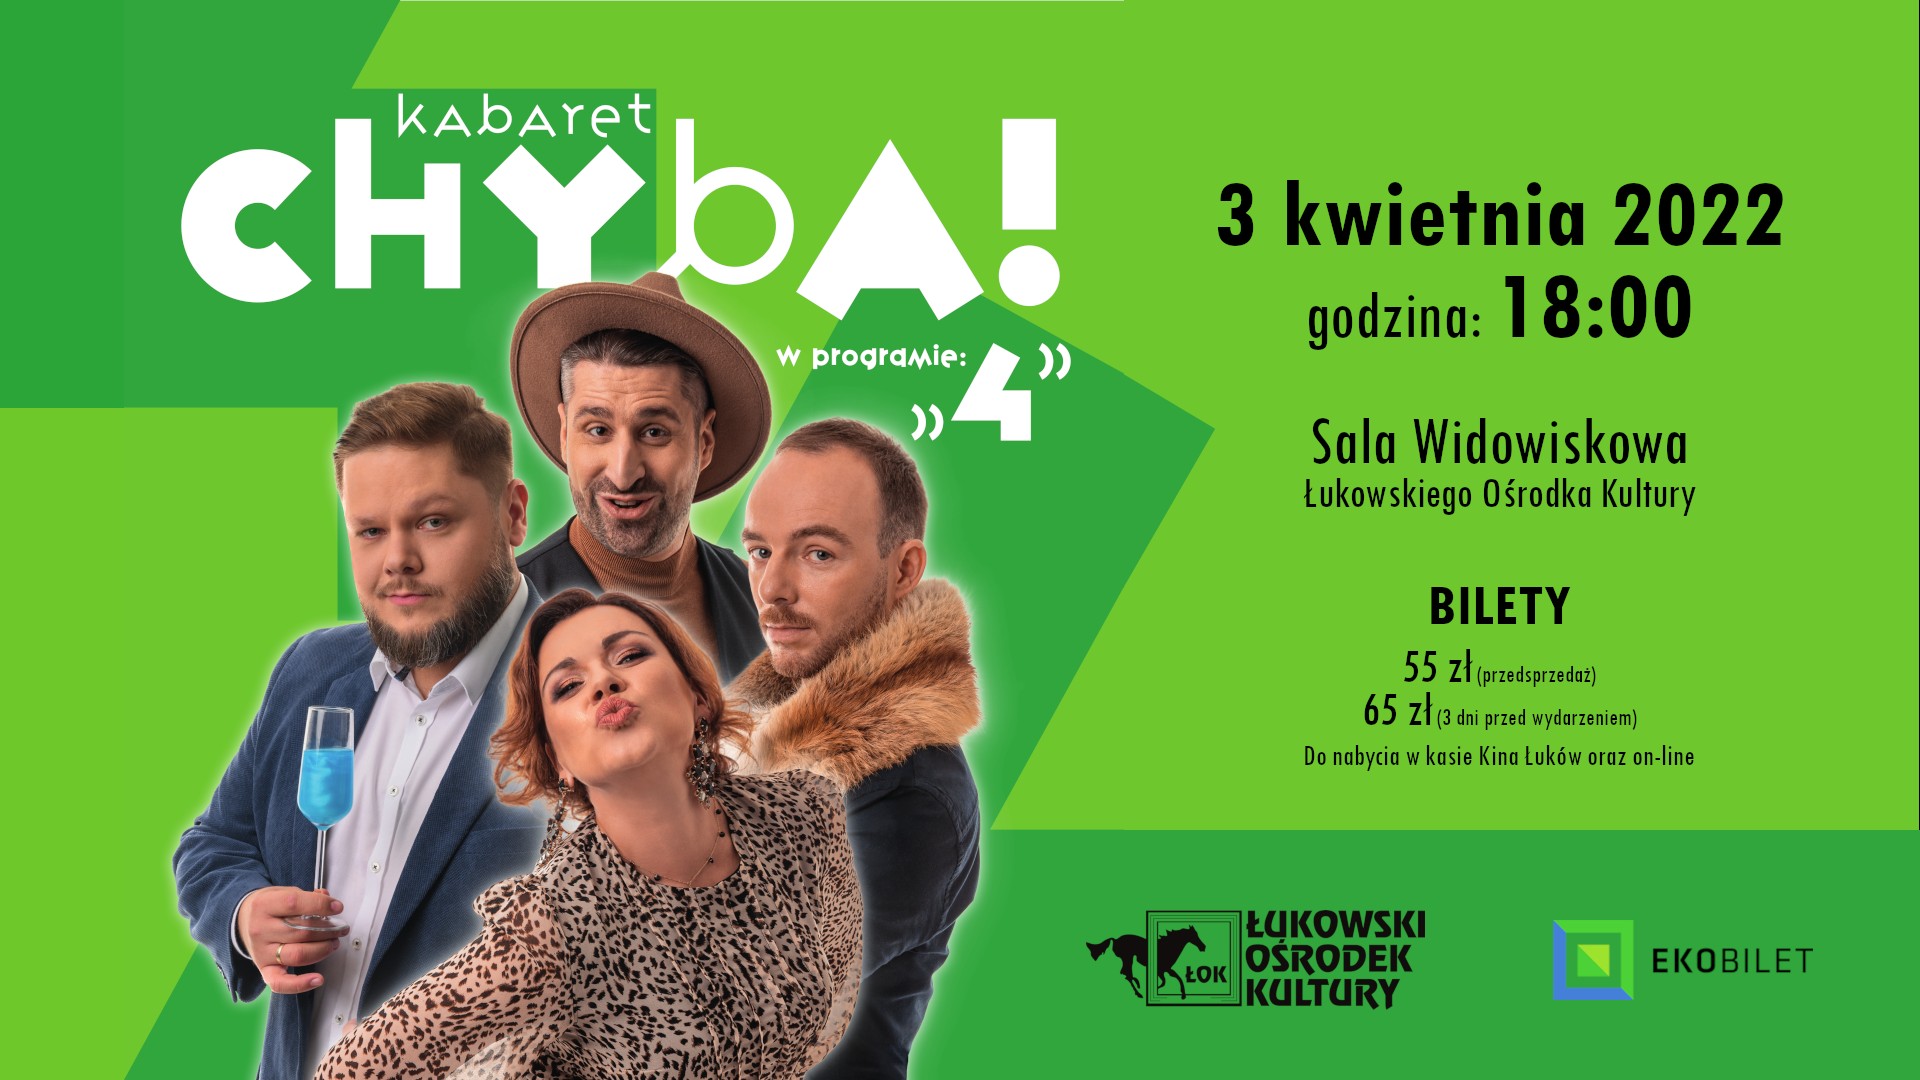 Kabaret „Chyba” w Łukowie - bilety już w sprzedaży